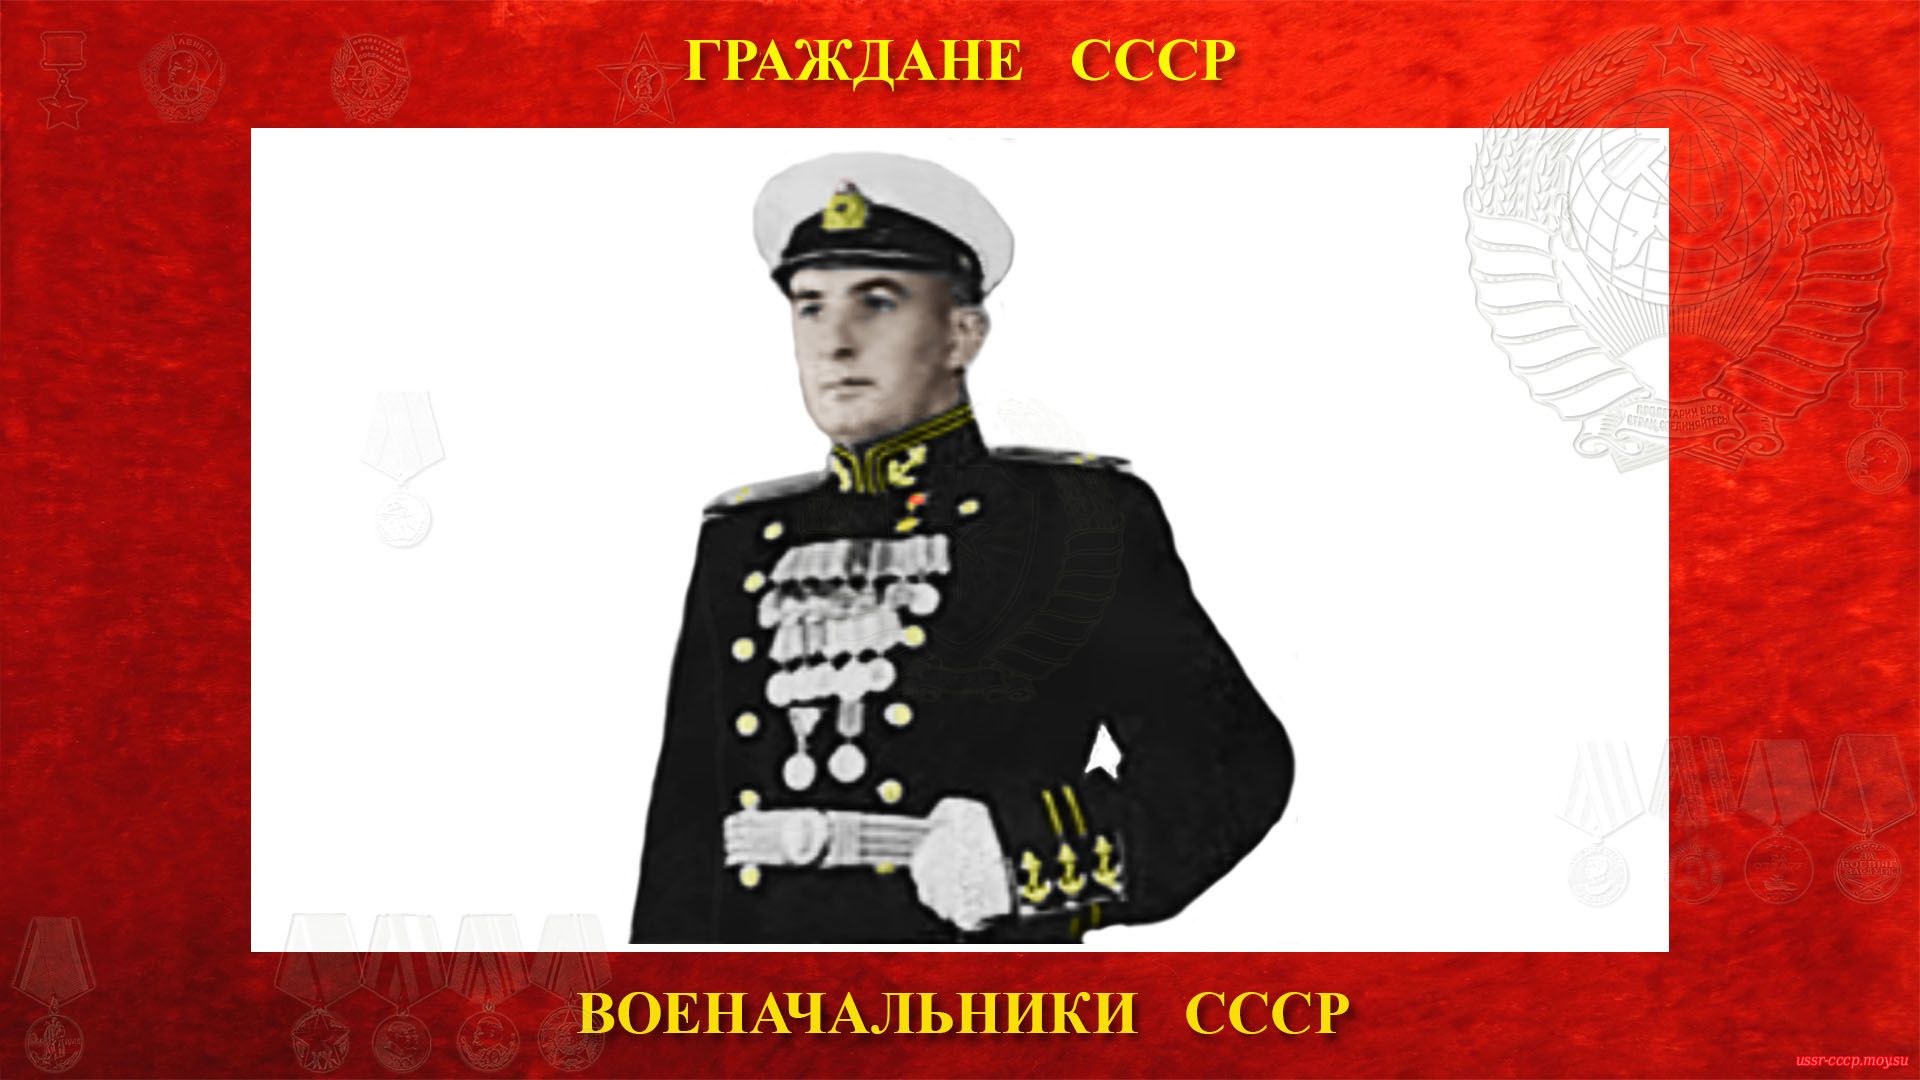 Терновский Георгий Владимирович — Капитан 2-го ранга СССР.